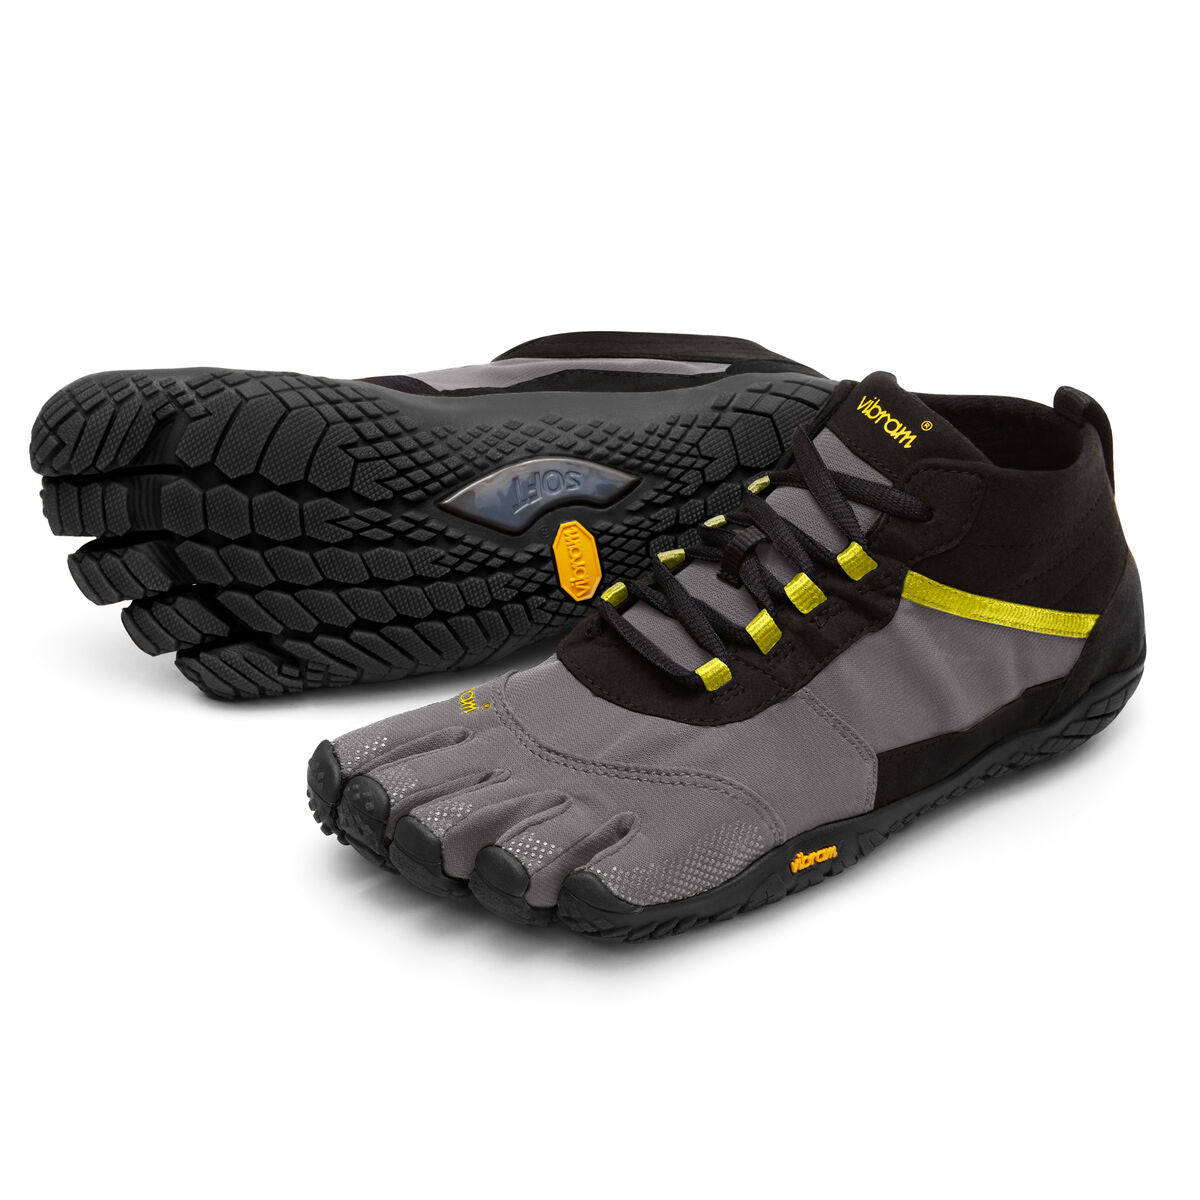 Men's Vibram Five Fingers V-Trek Hiking Shoe in Black/Grey/Citronelle from the front